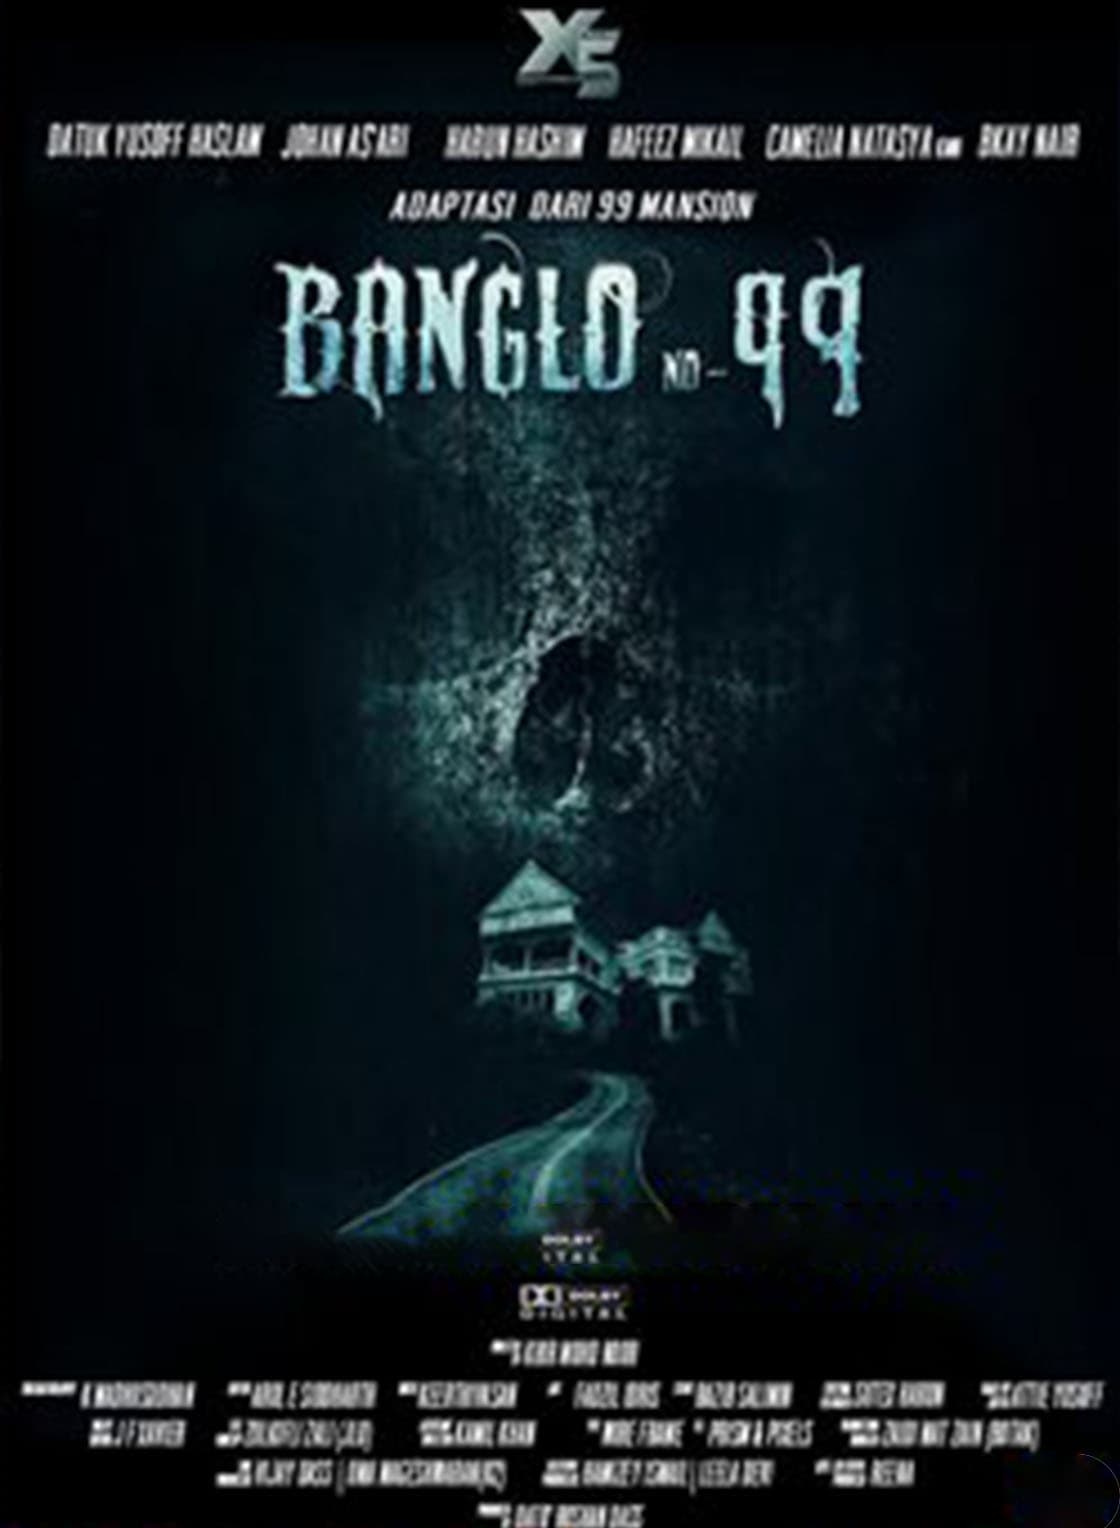 Banglo No. 99